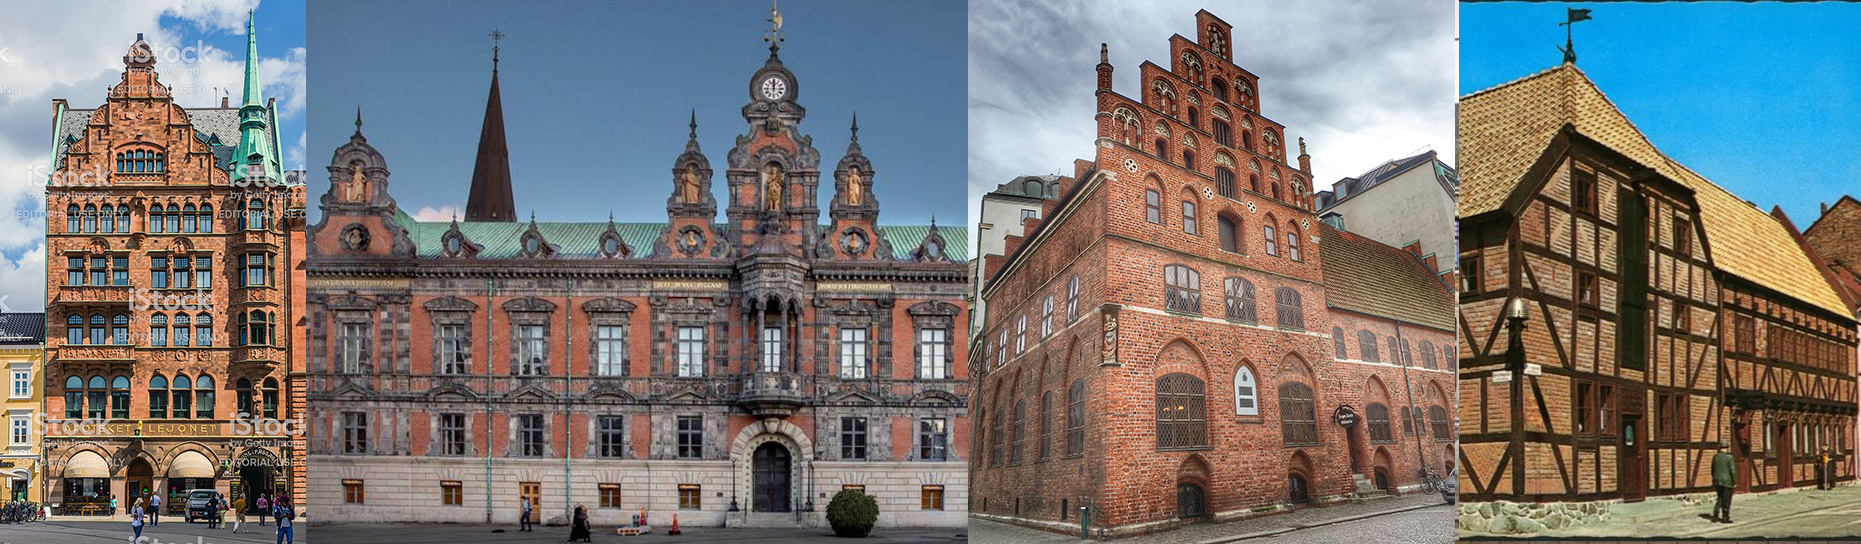 Finns Sveriges vackraste byggnad i Malmö?